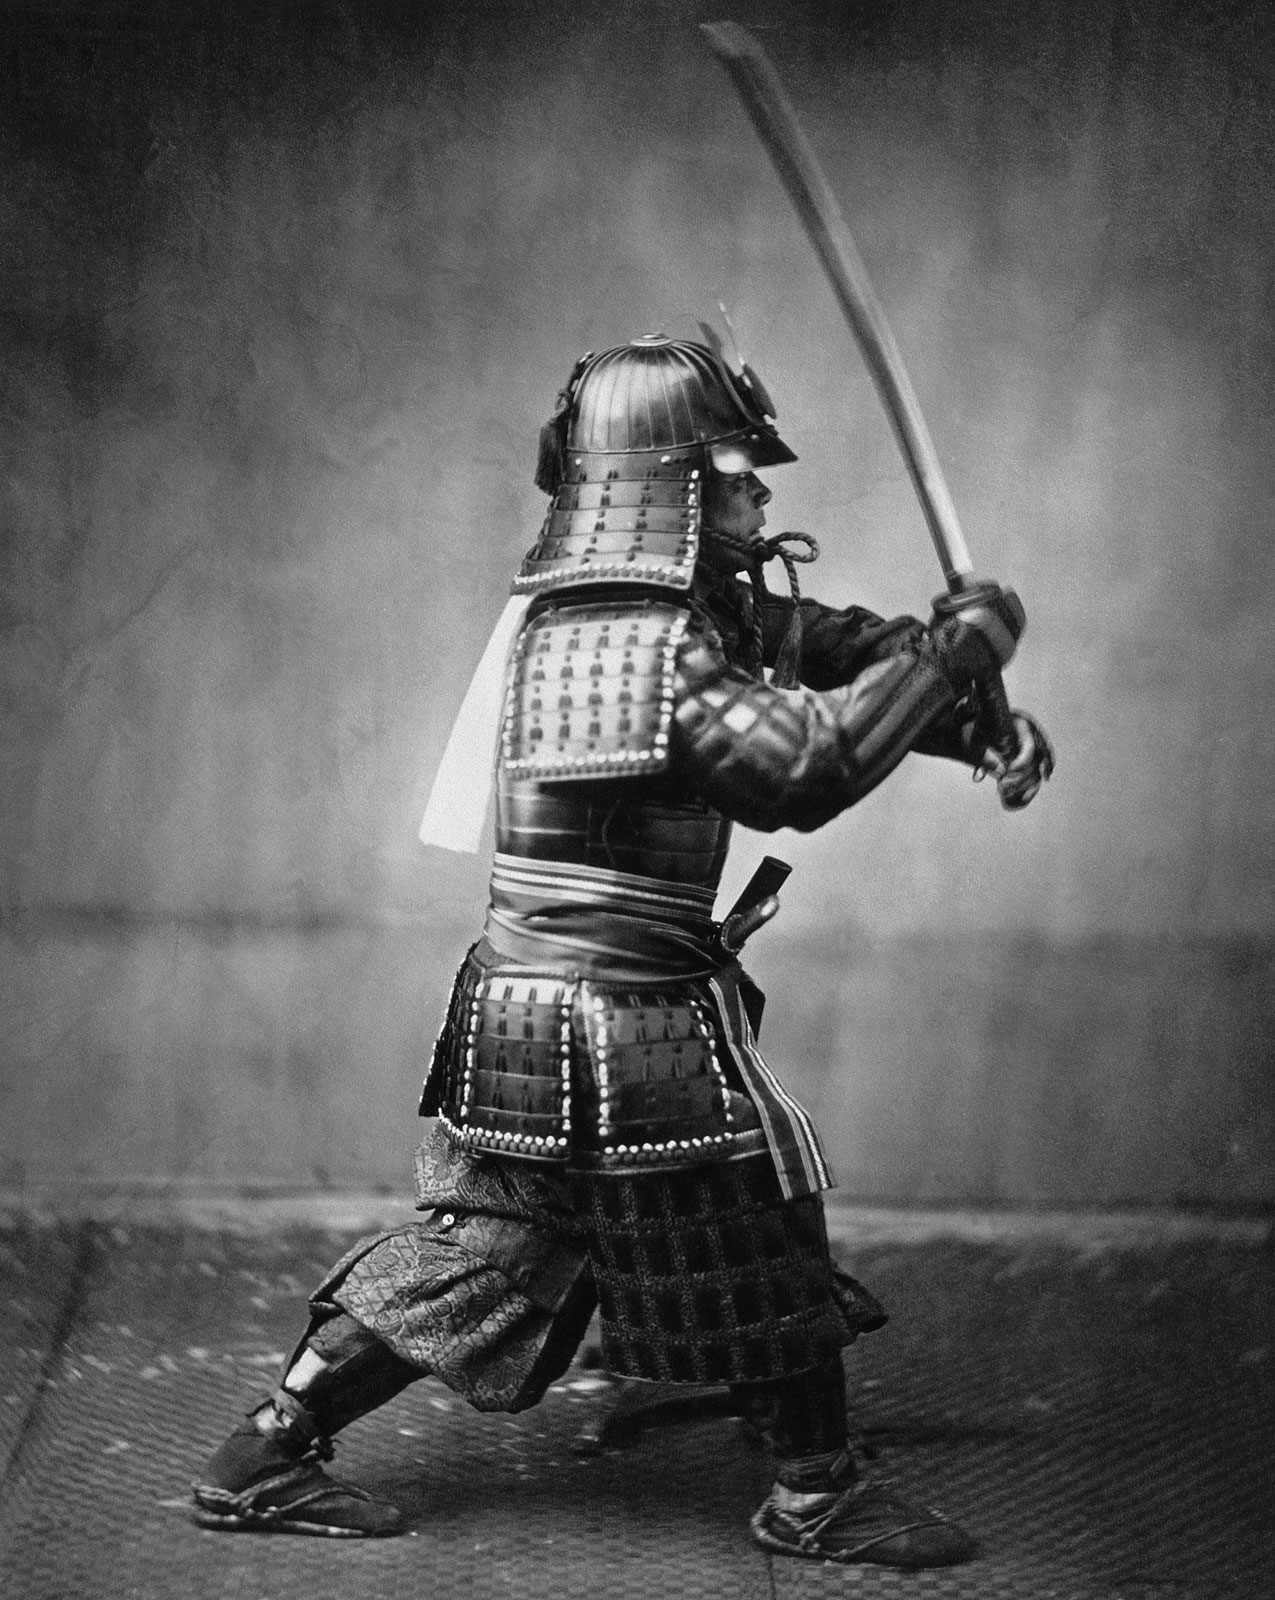 A photograph of a samurai.